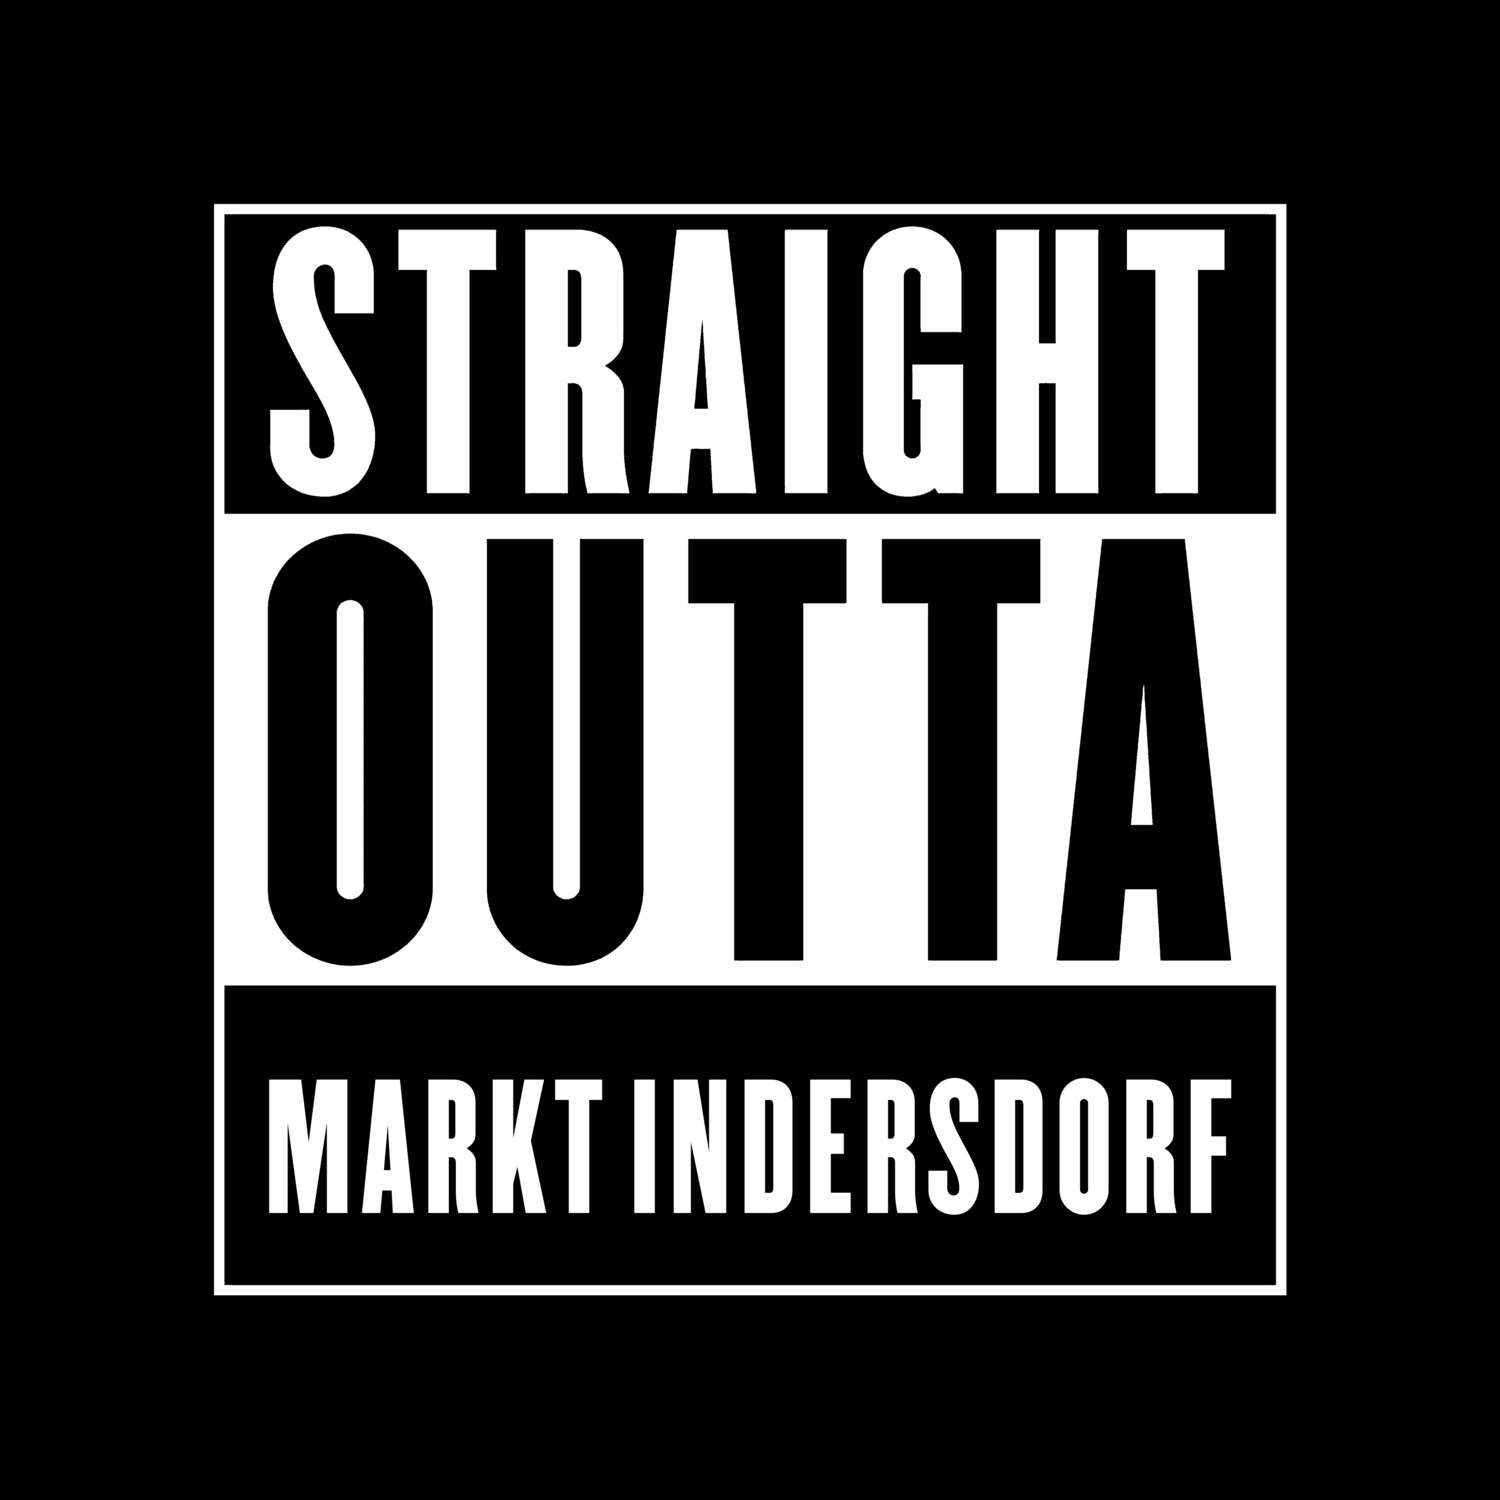 Markt Indersdorf T-Shirt »Straight Outta«